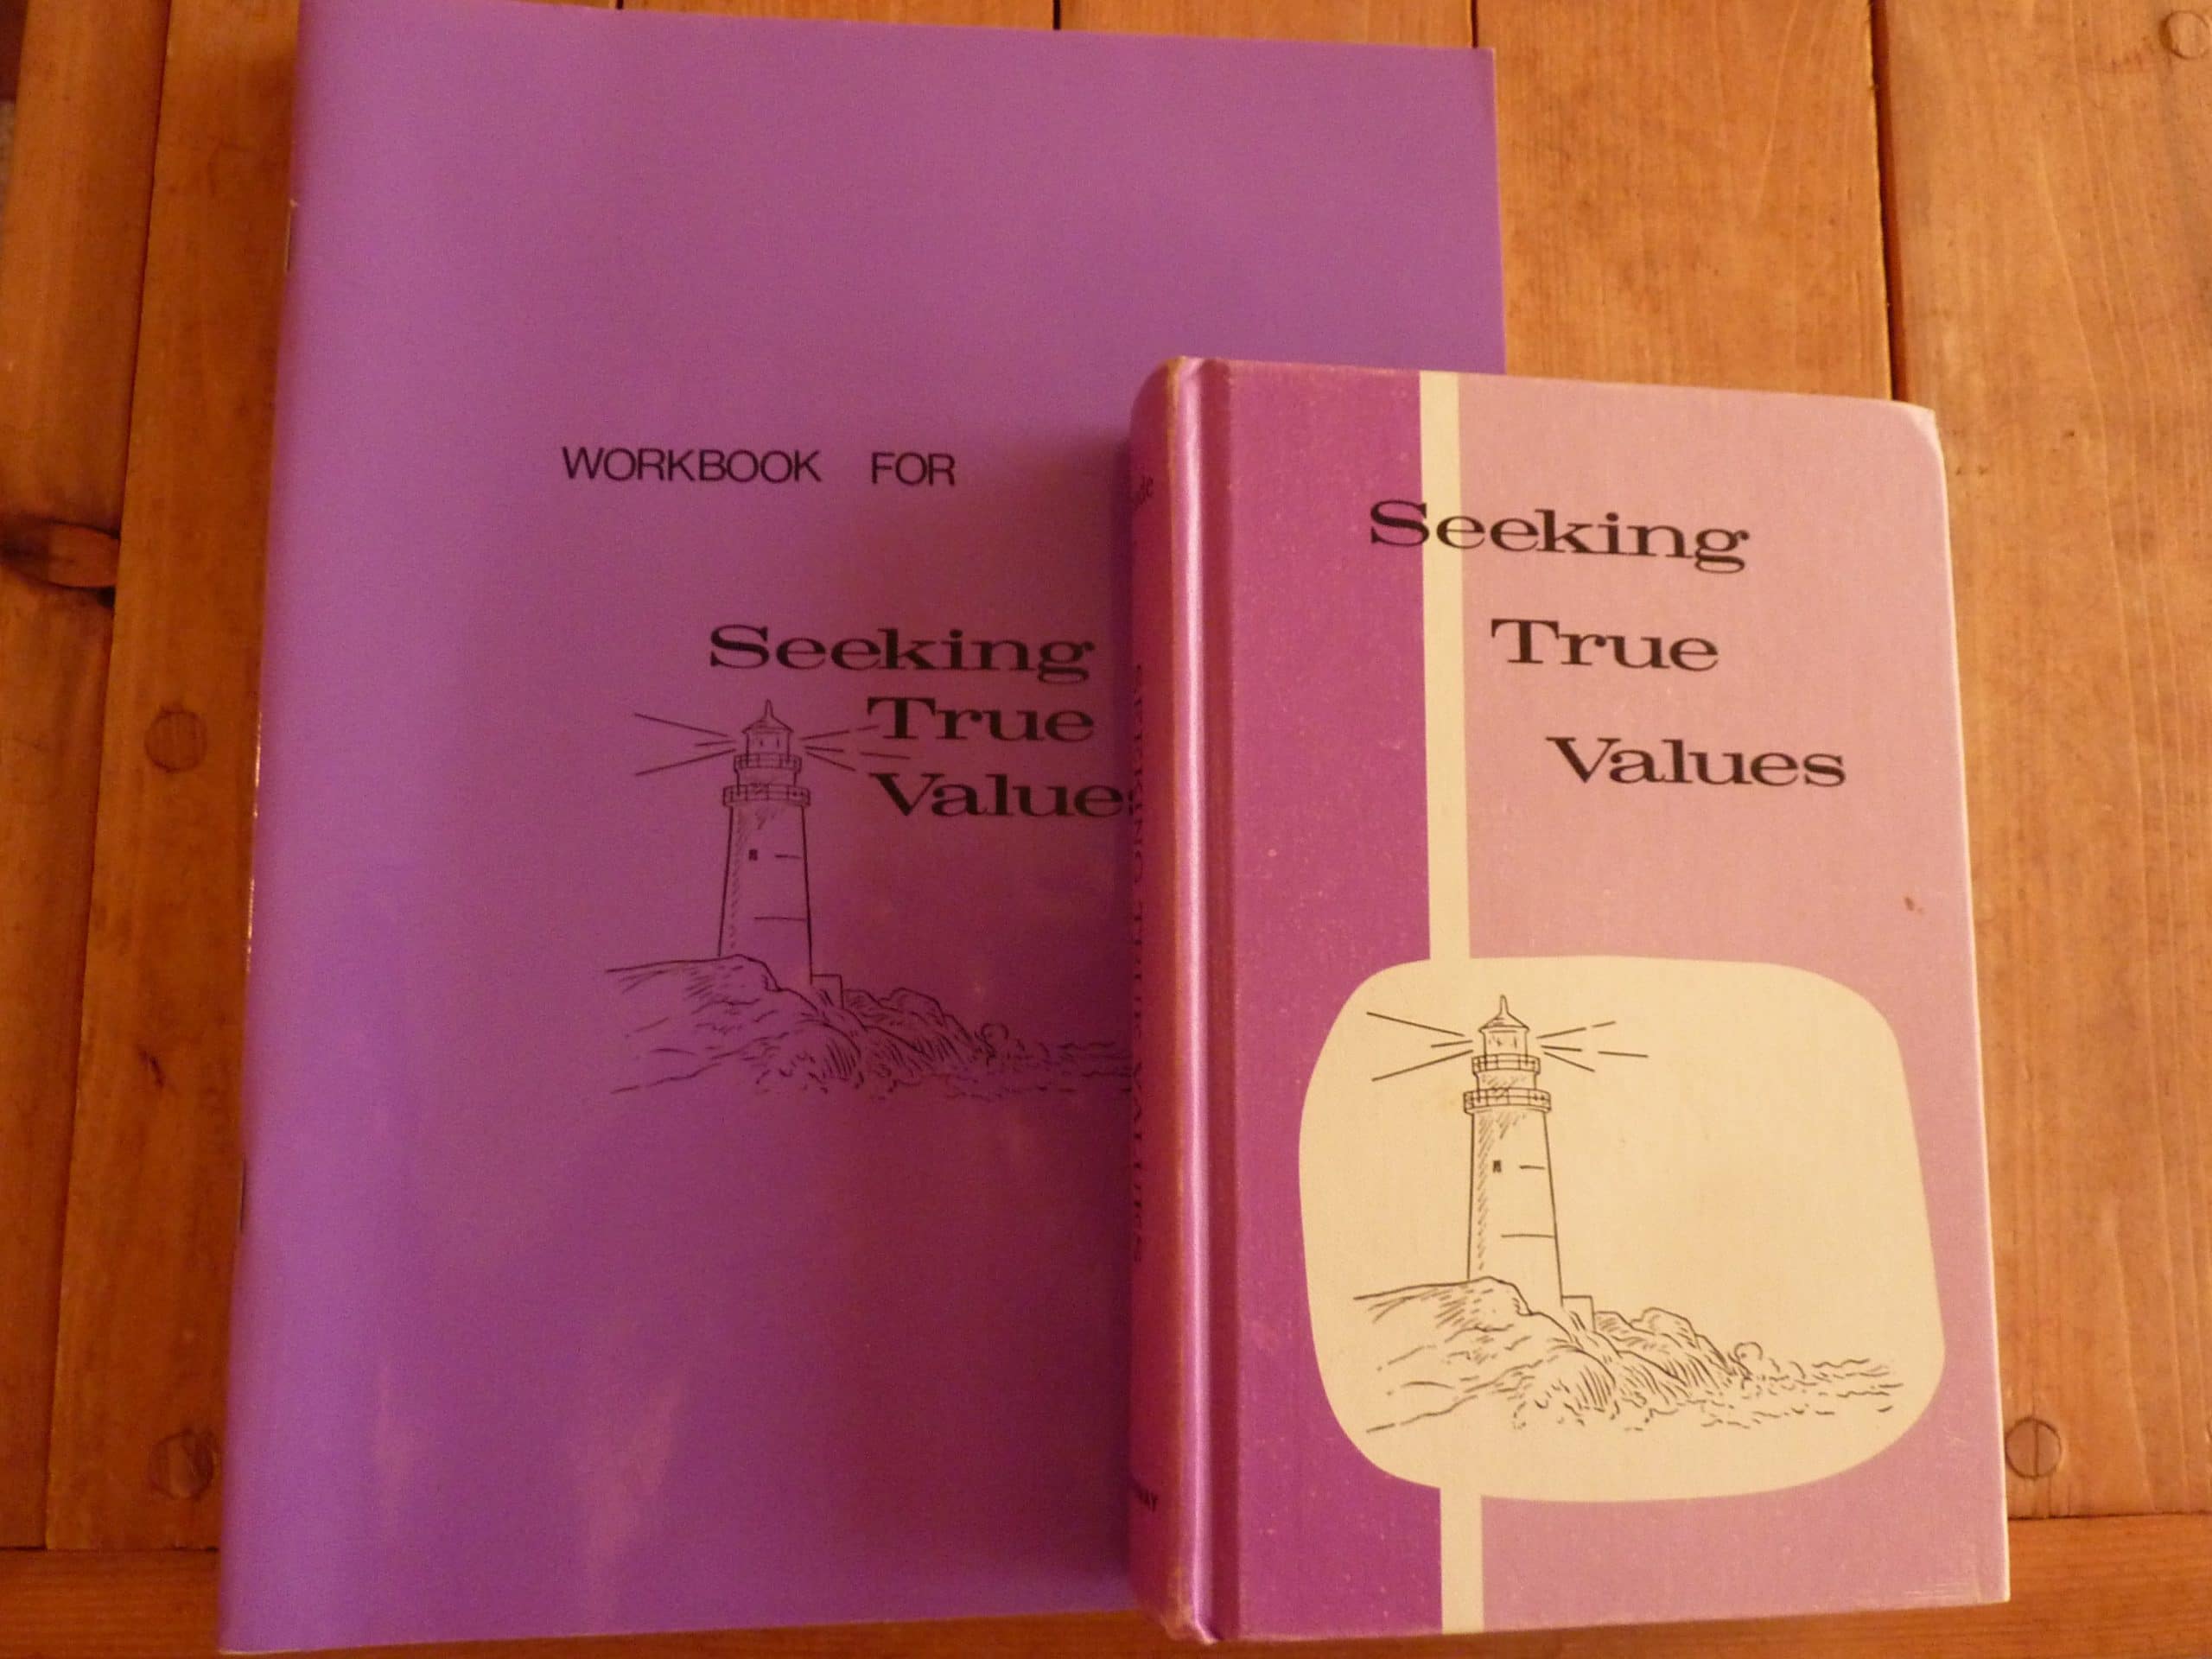 Seeking True Values by Pathway Publishers